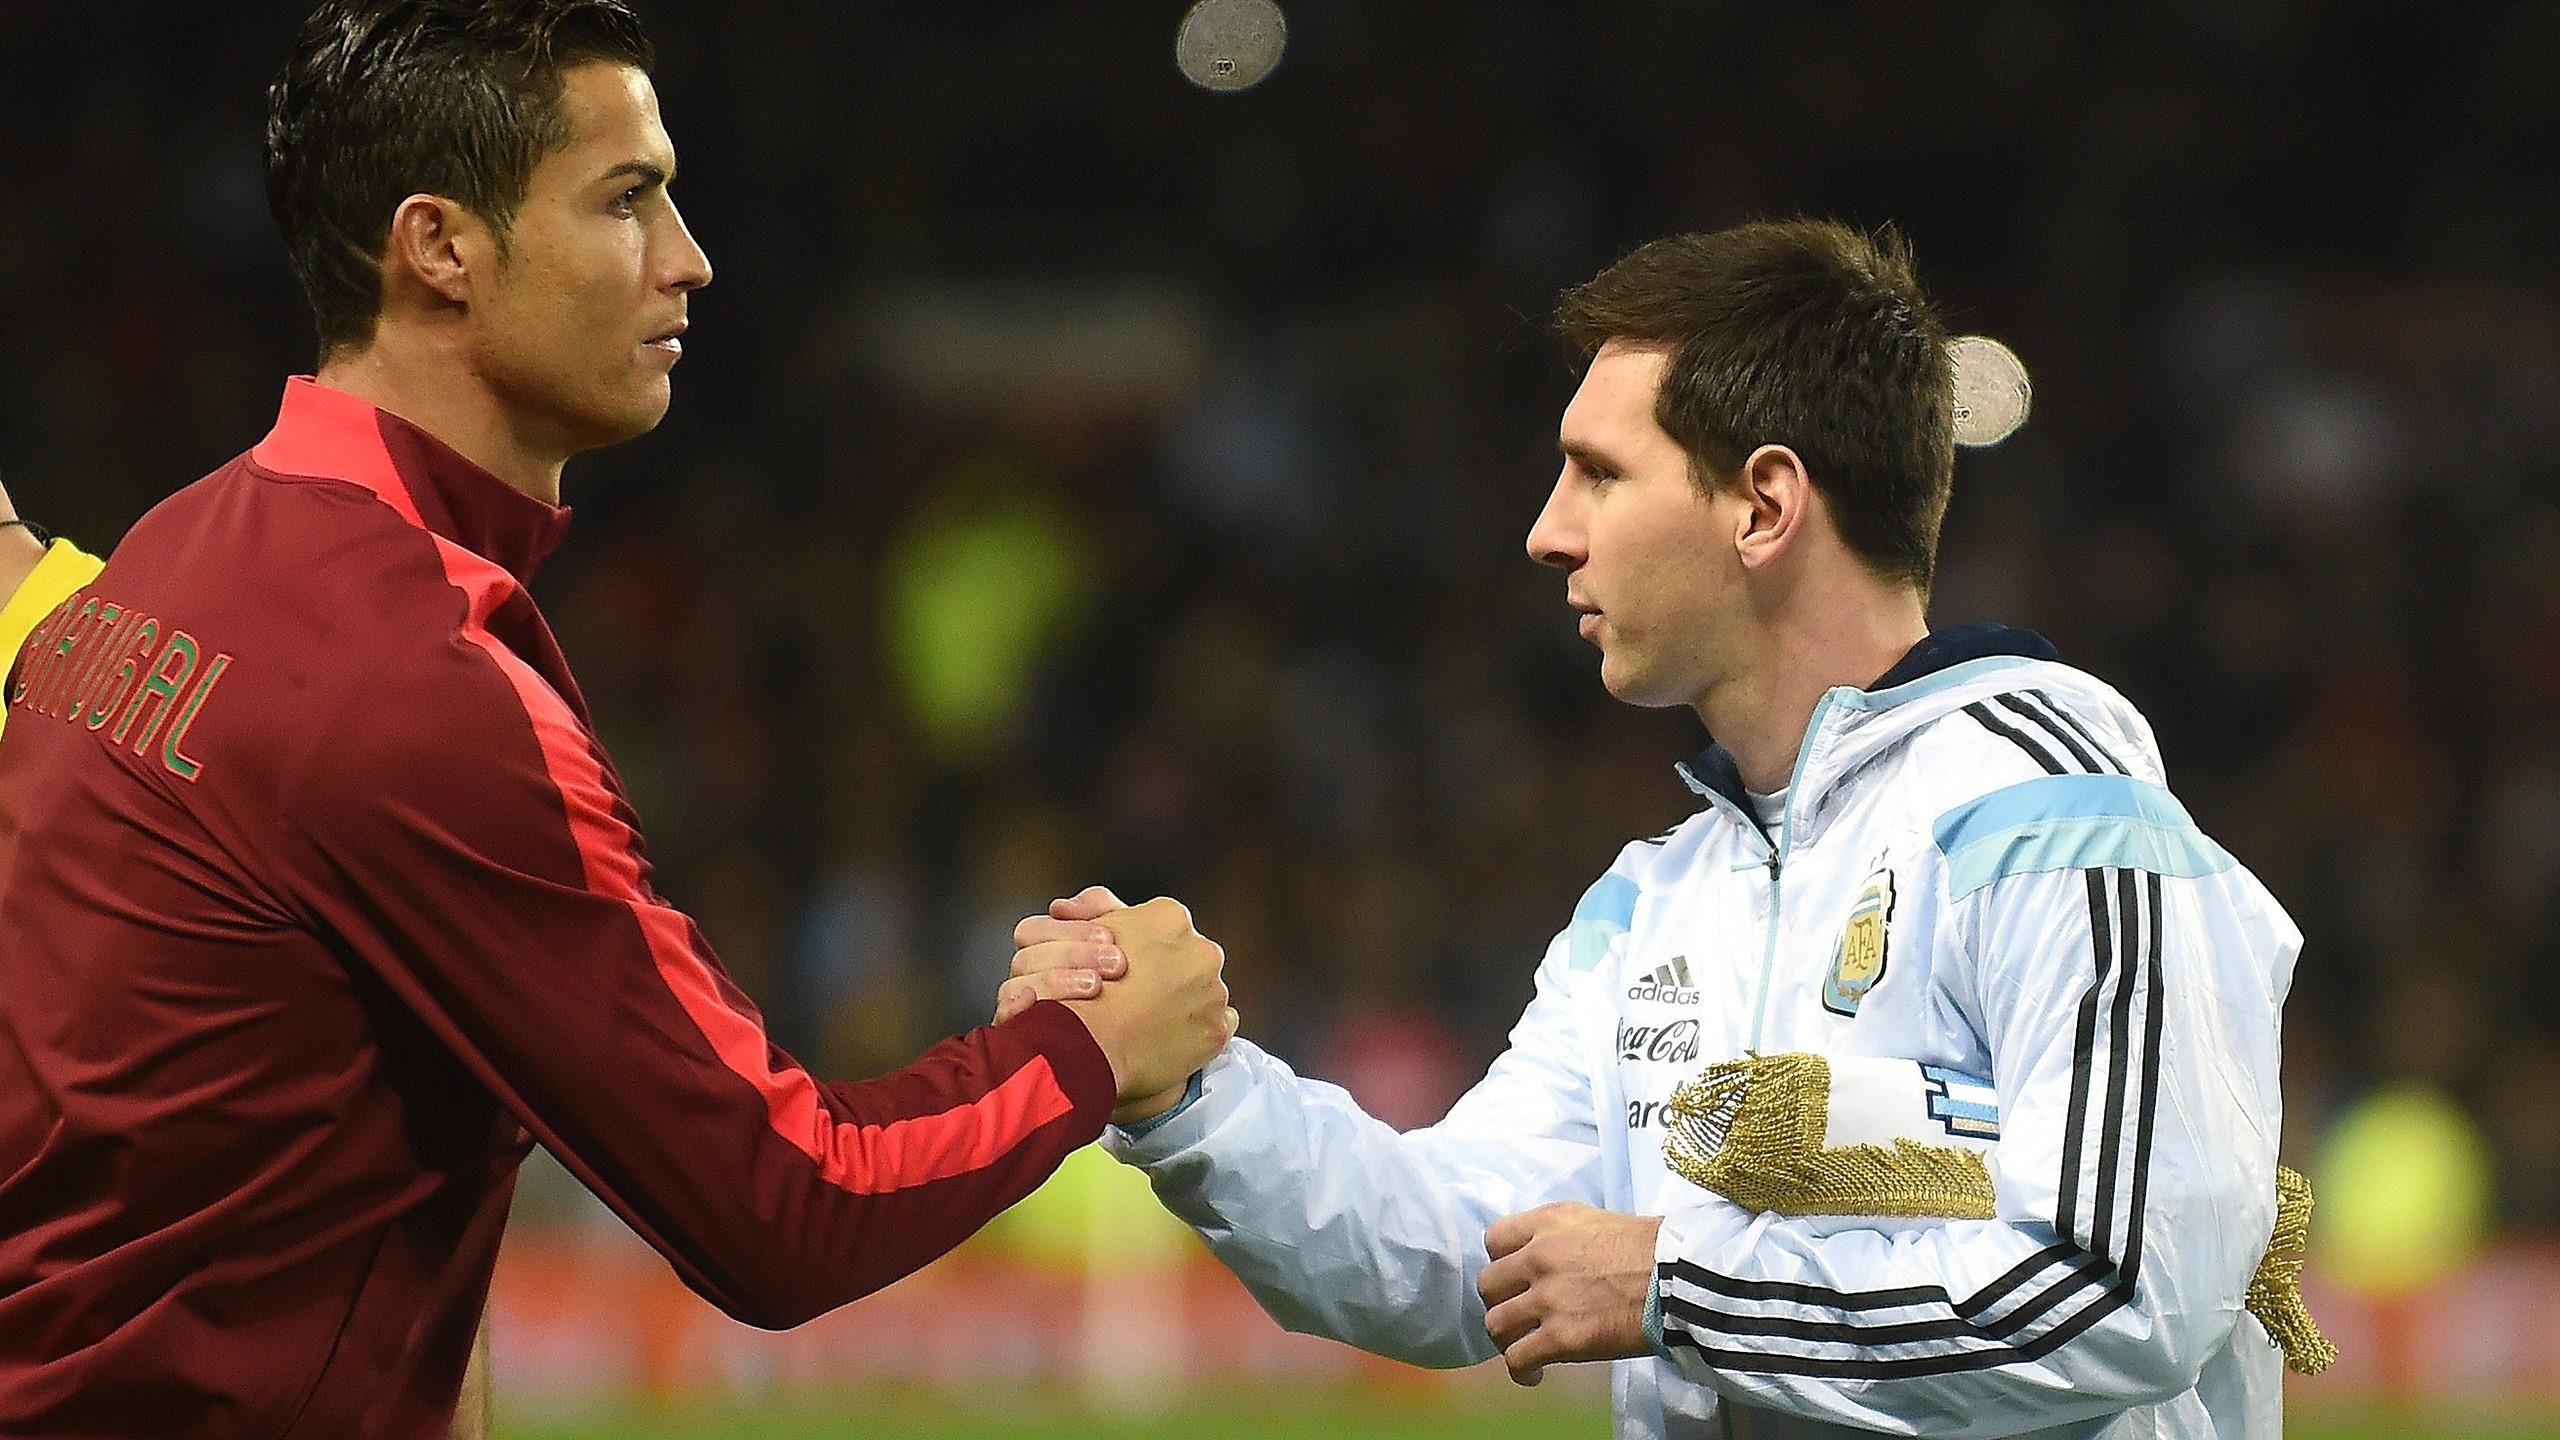 Spektakulärer Plan: Lionel Messi und Cristiano Ronaldo sollen in einem Team spielen - Eurosport